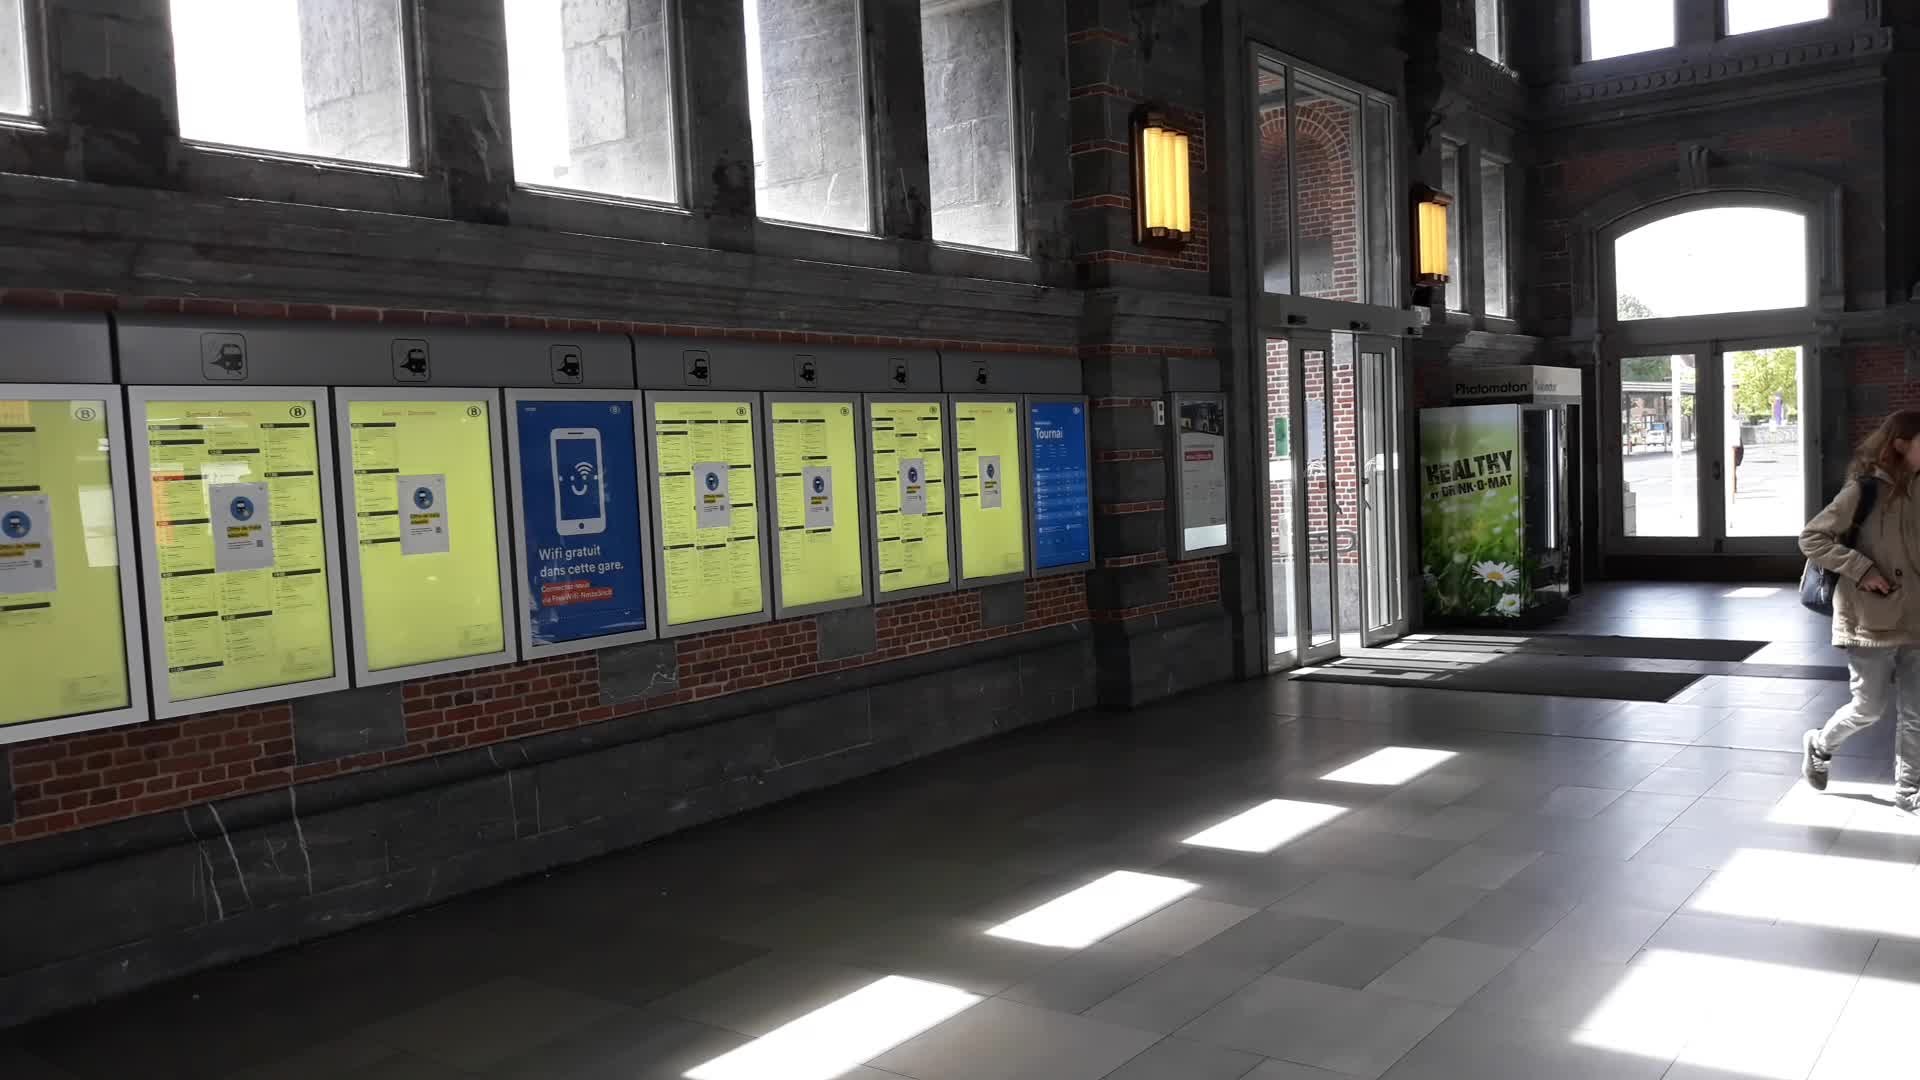 Tournai interieur gare sans mobilier 30.04.2020 - Vidéo Dailymotion